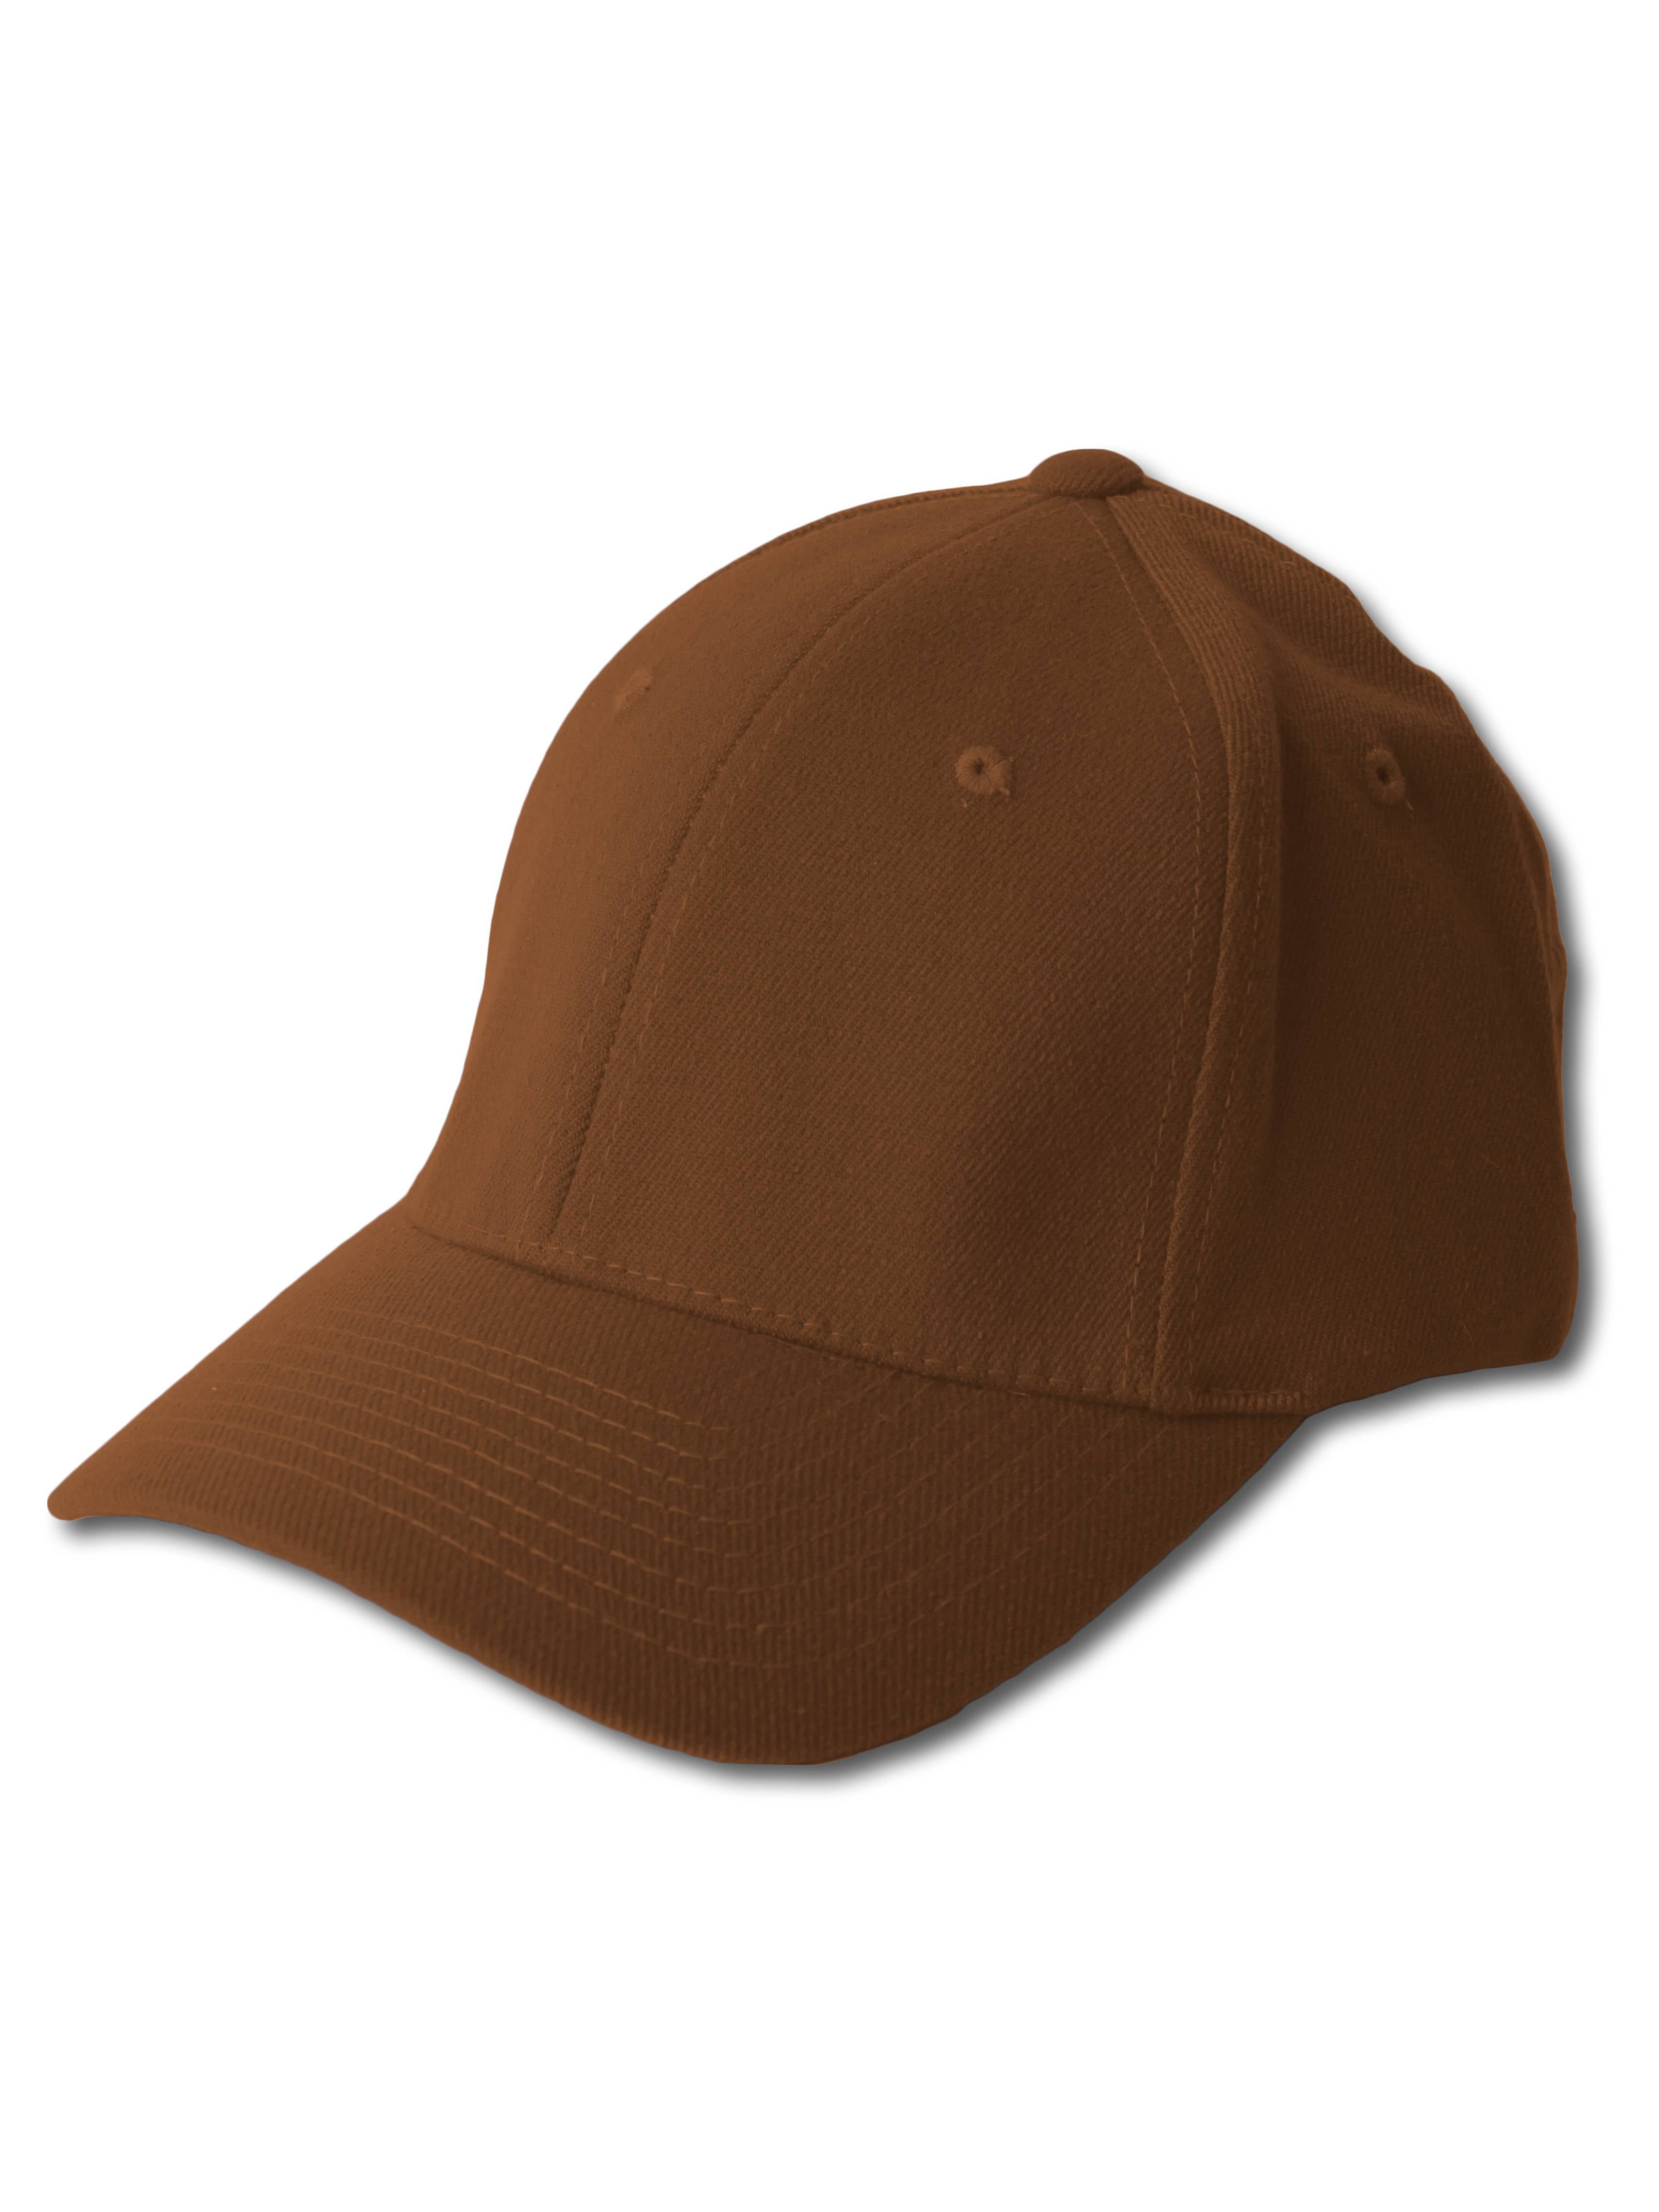 Reebok Arizona Coyotes Flex Fit Hat (L/XL)